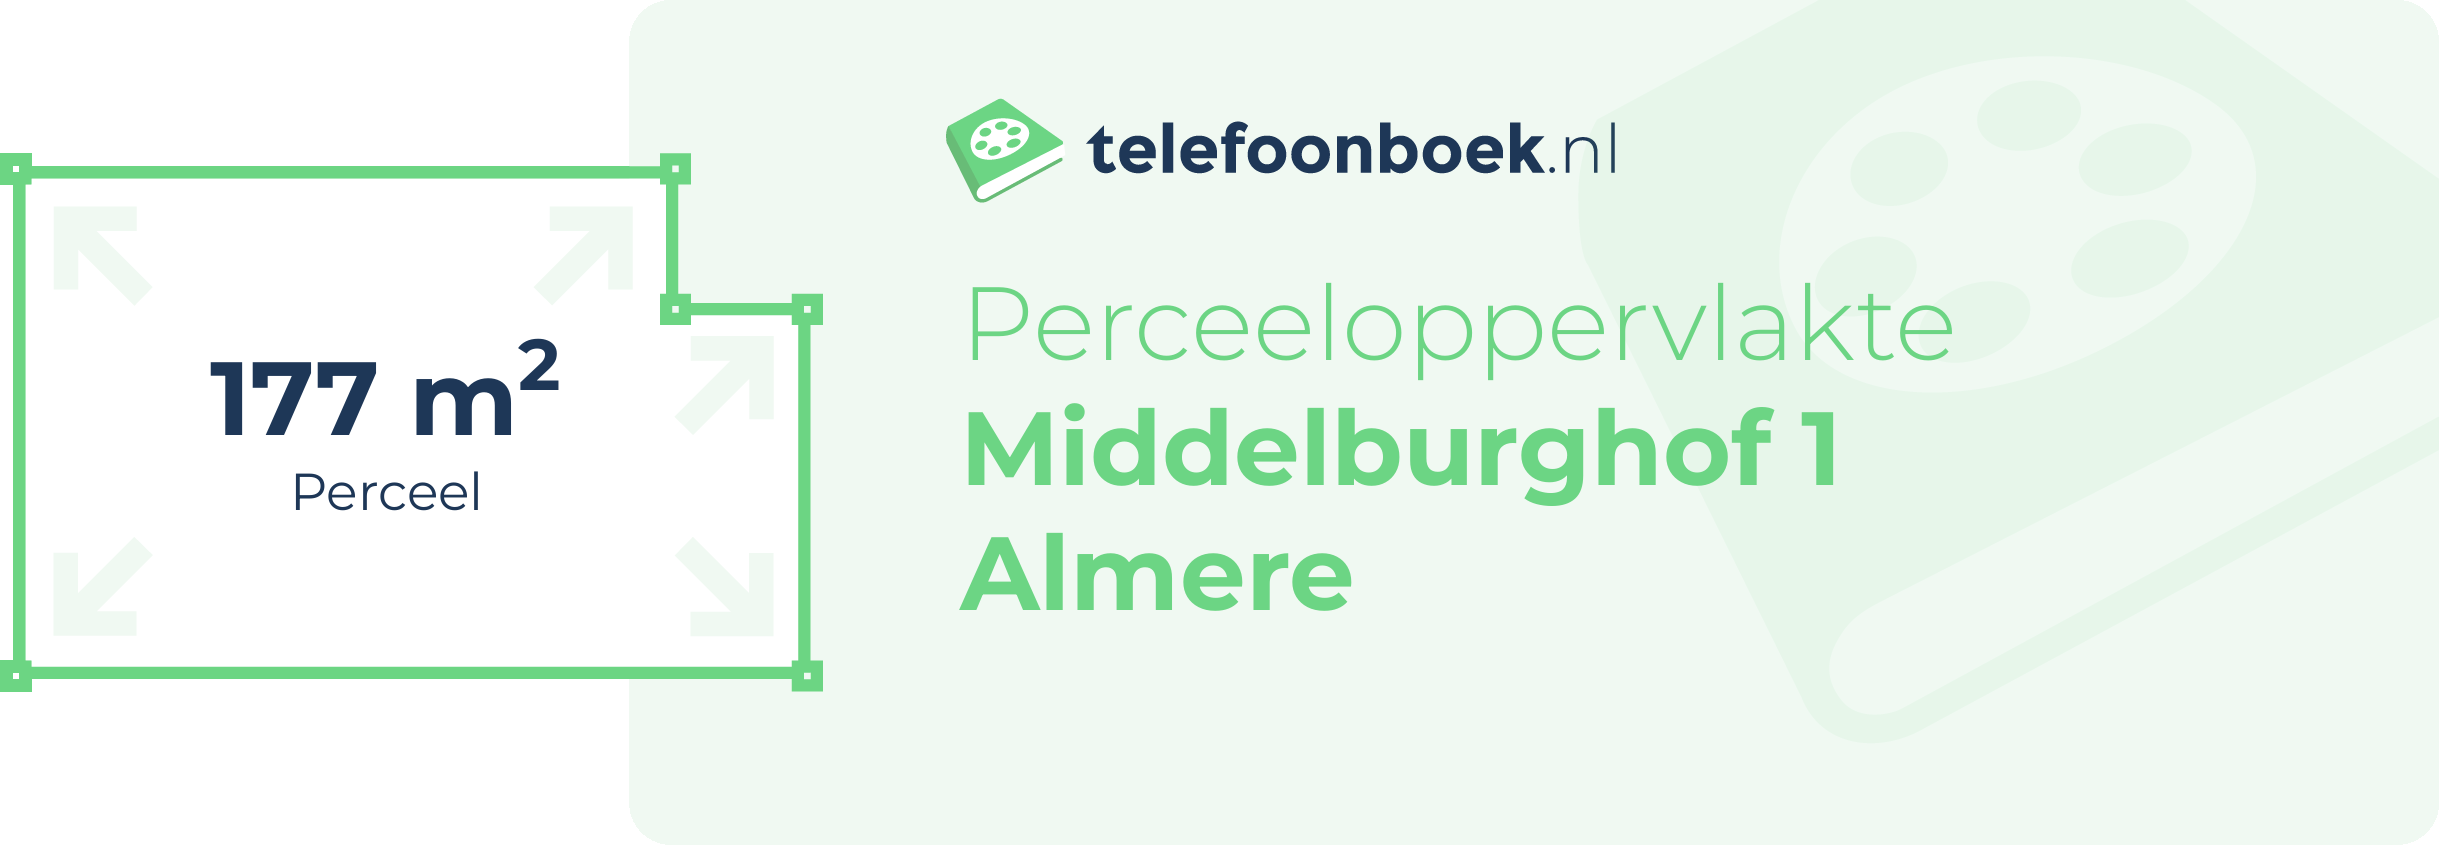 Perceeloppervlakte Middelburghof 1 Almere